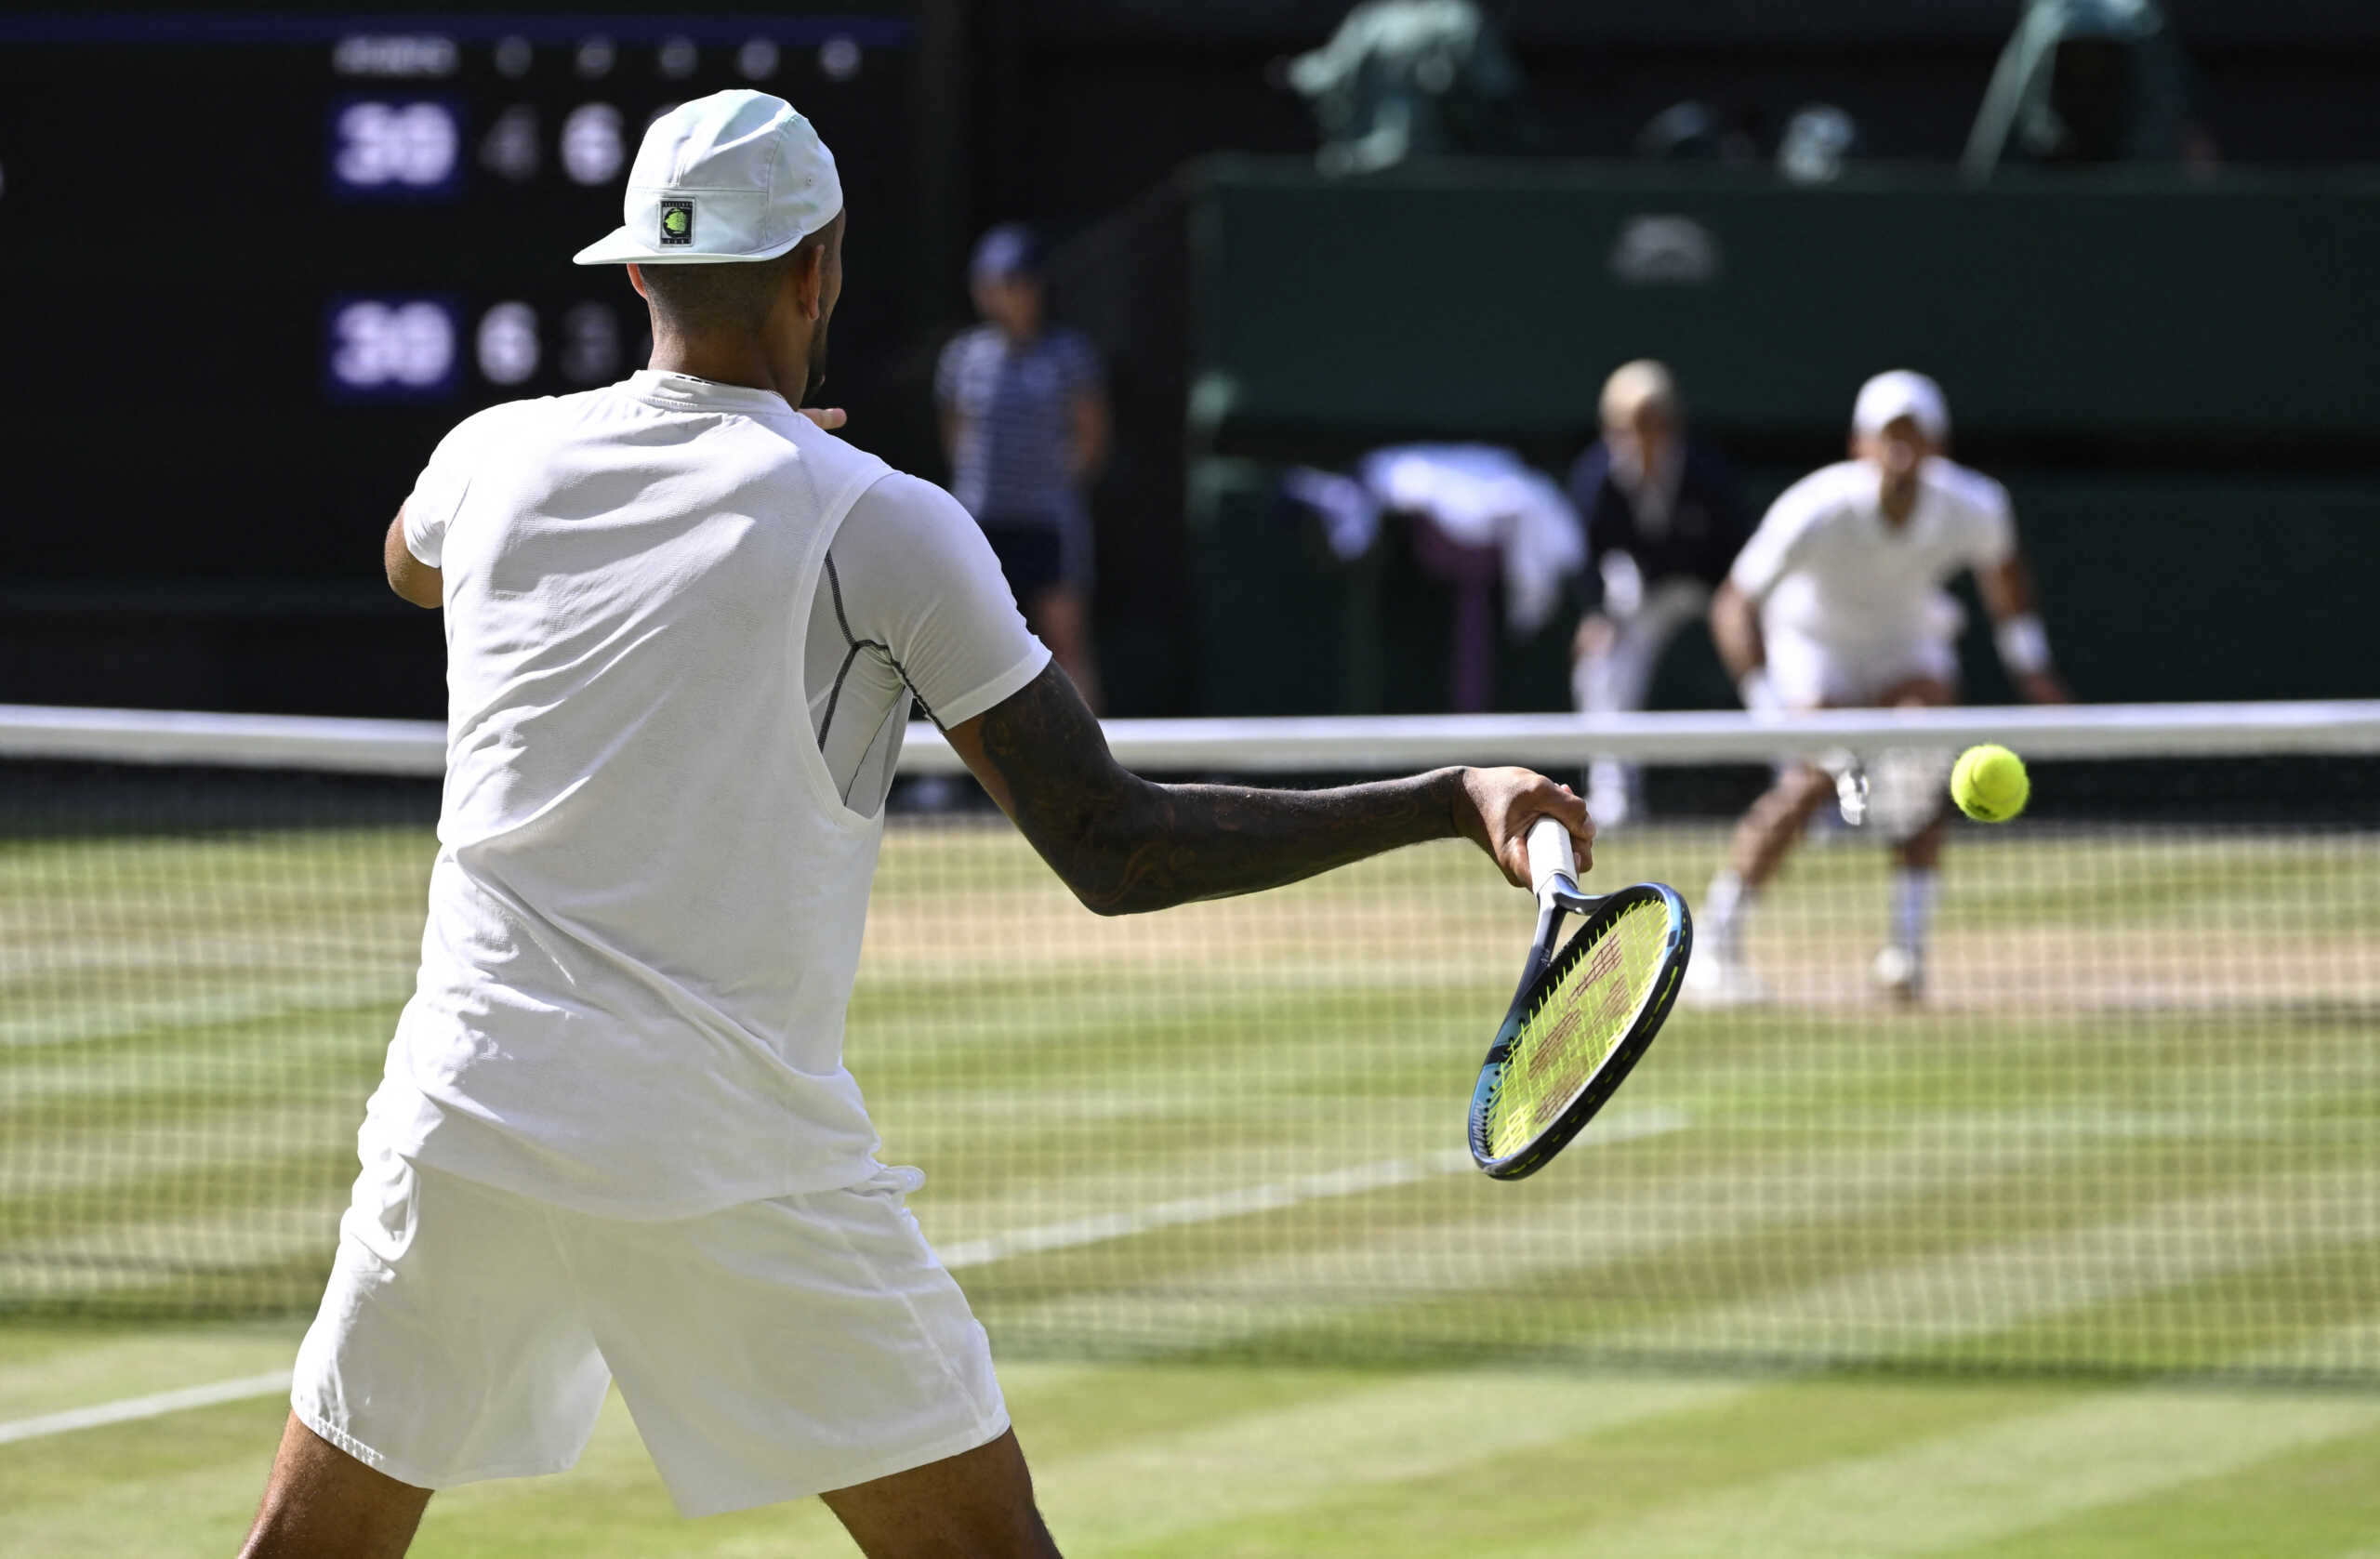 Τελικός Wimbledon LIVE: Νόβακ Τζόκοβιτς – Νικ Κύργιος